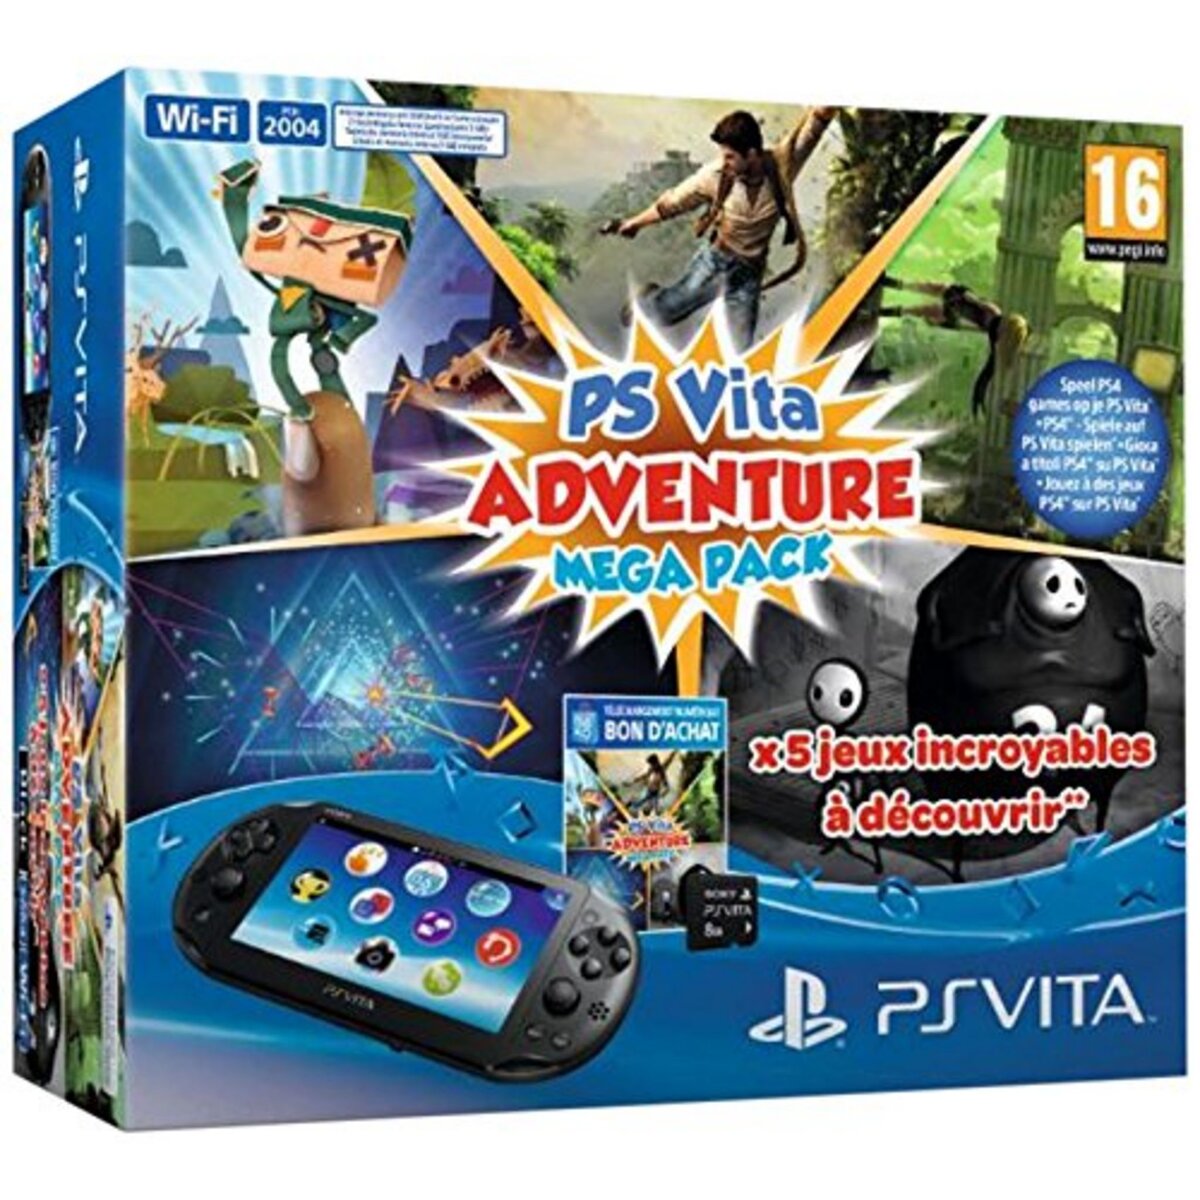 Jeux, Consoles et Accessoires pour PS Vita Playstation 4 Sans Marque -  Achat / Vente pas cher